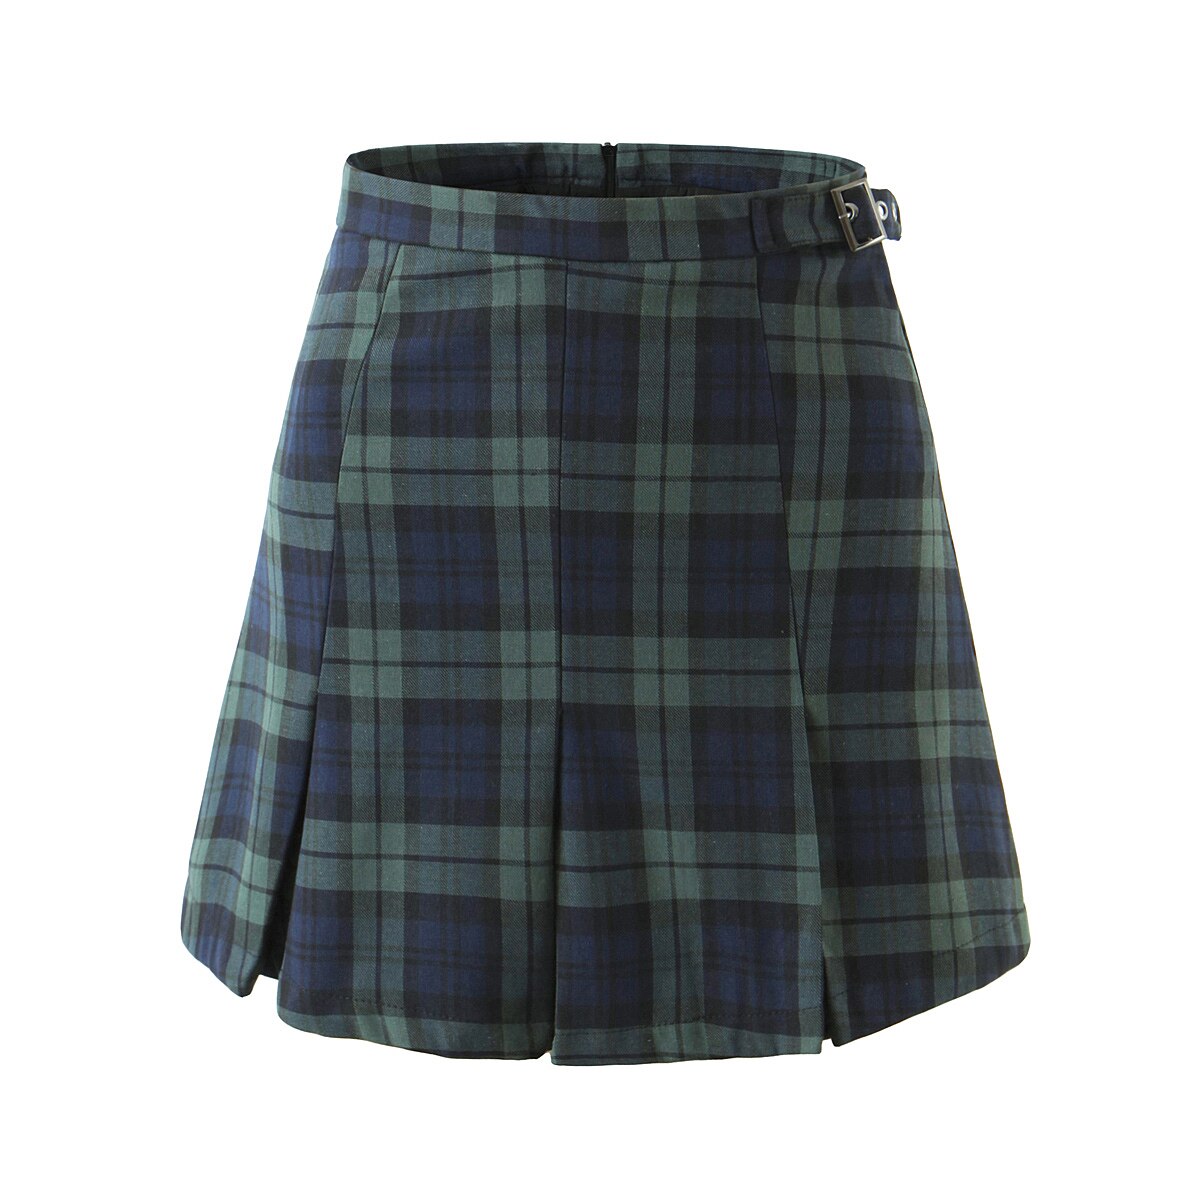 Geumxl Women Buckle Belt High Waist Check Gingham Plaid Print Mini Pleated Skirt England Vintage Package Hips Zipper Short Skirts